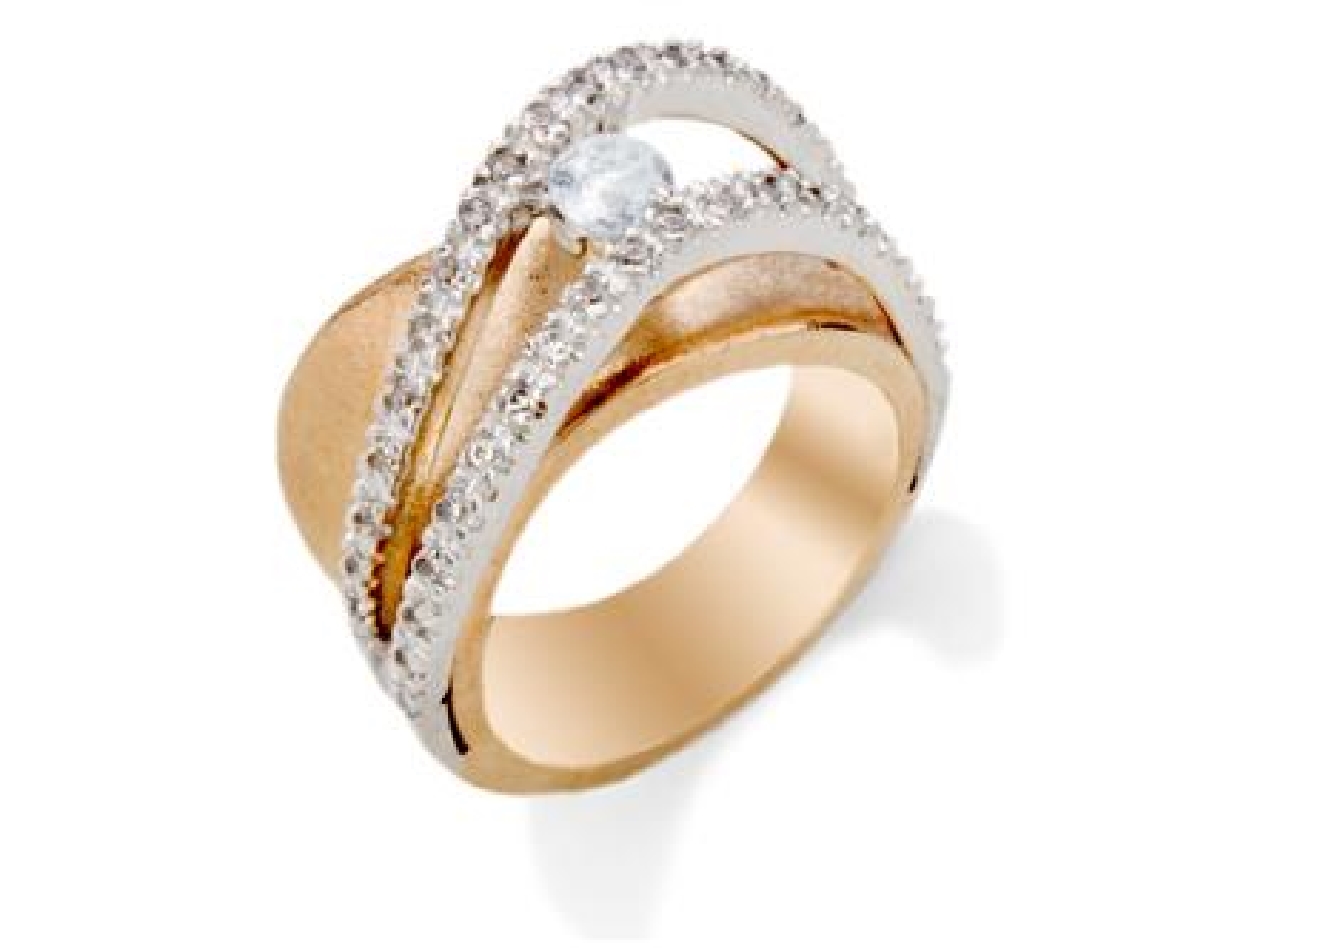 14KT Rose &amp; White Gold Diamond Ring
CS: .29ct ...